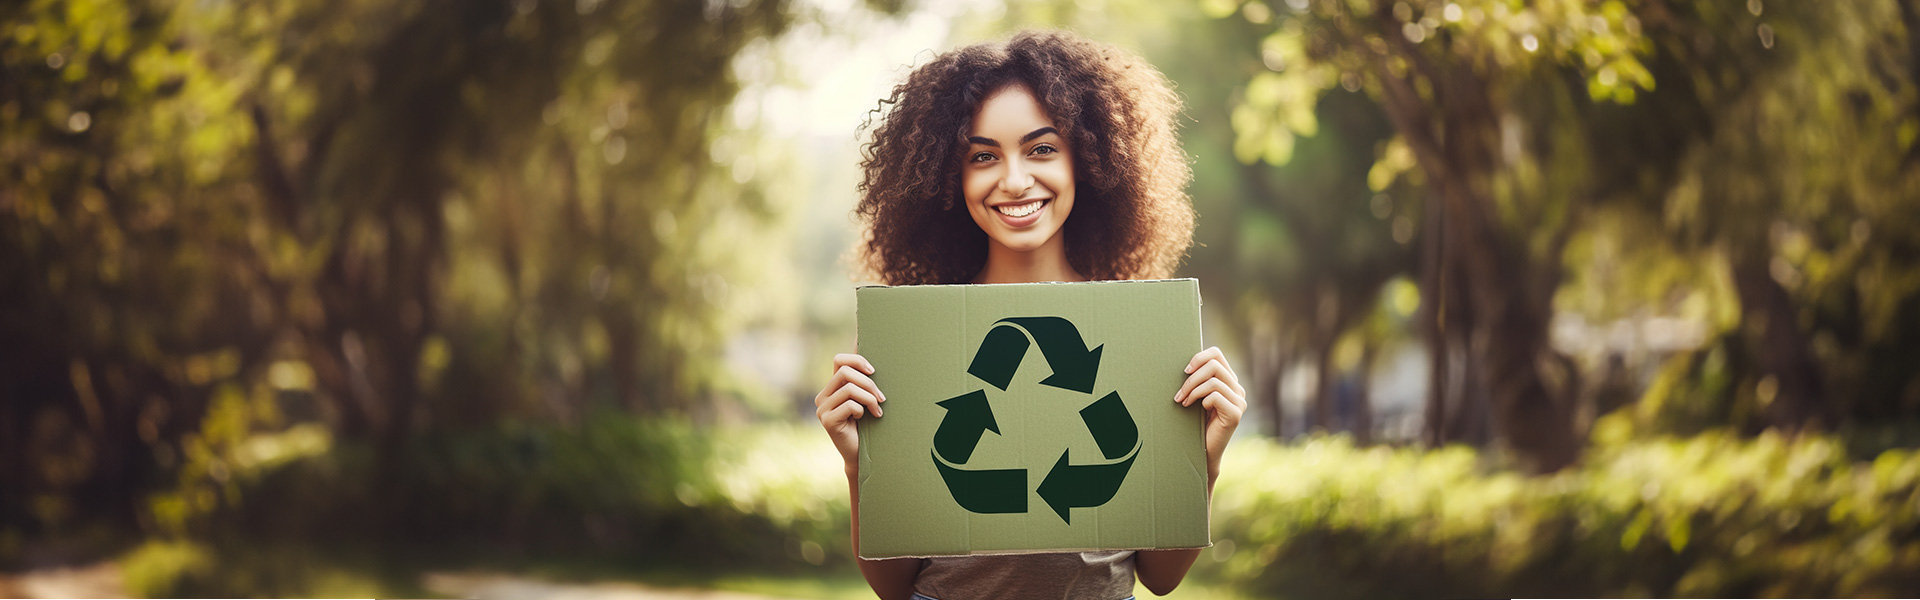 廢棄物處理與提升資源再利用率